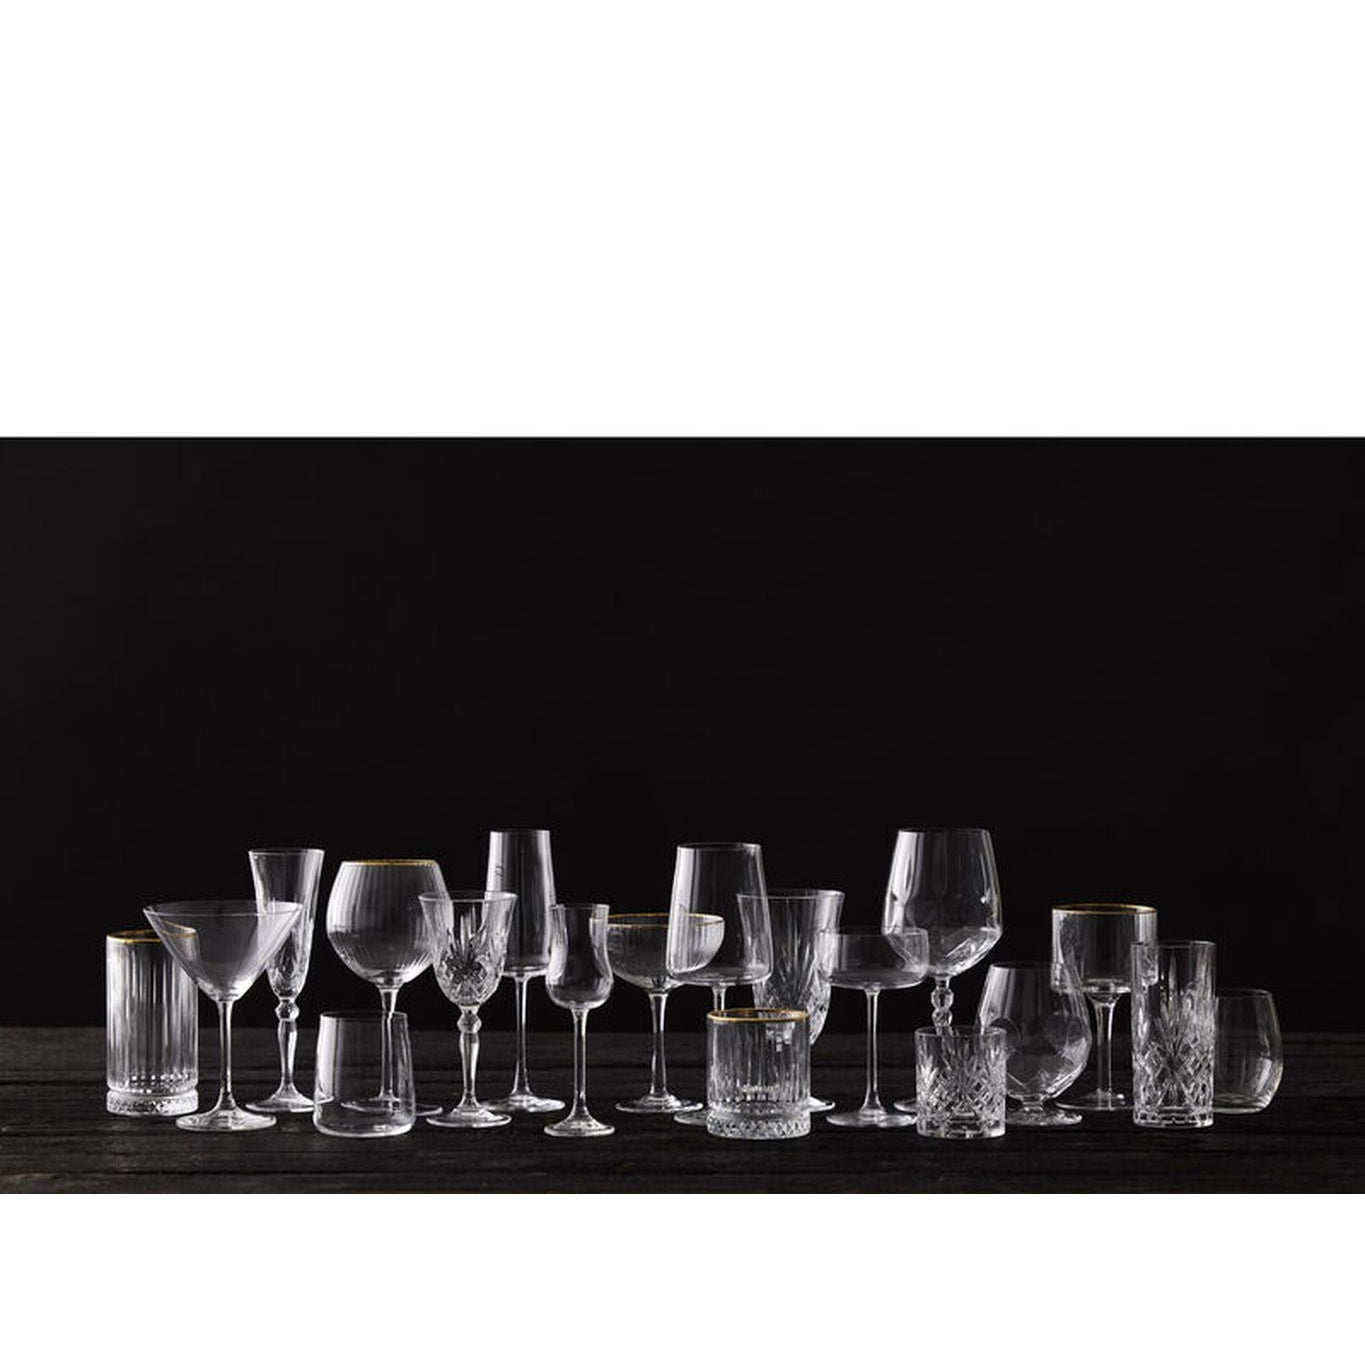 Lyngby Glas Zero Krystal Champagne Glass 30 Cl, 4 Pcs.